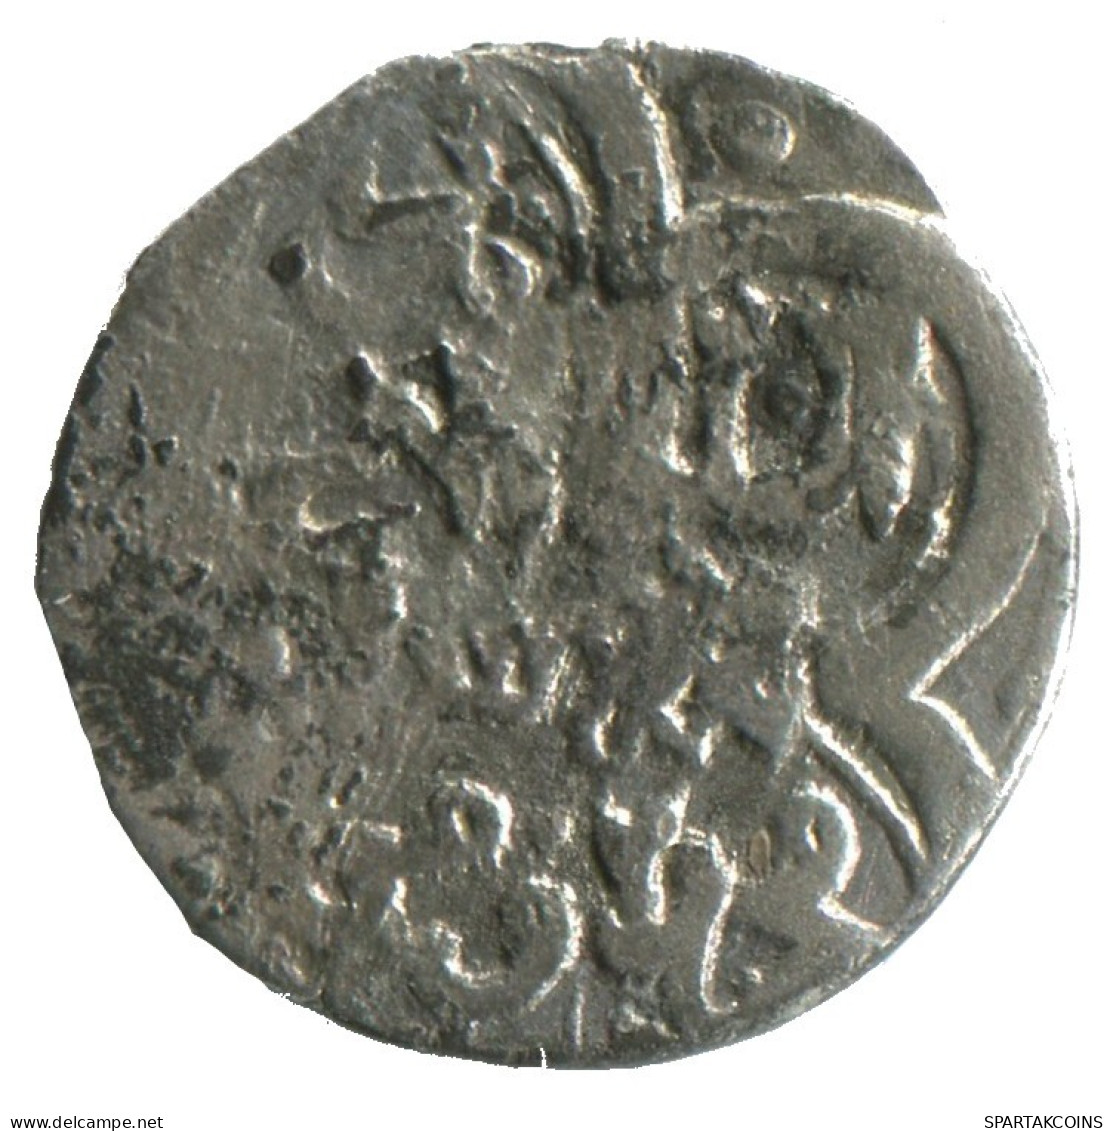 GOLDEN HORDE Silver Dirham Medieval Islamic Coin 1.4g/16mm #NNN2014.8.F.A - Islamitisch